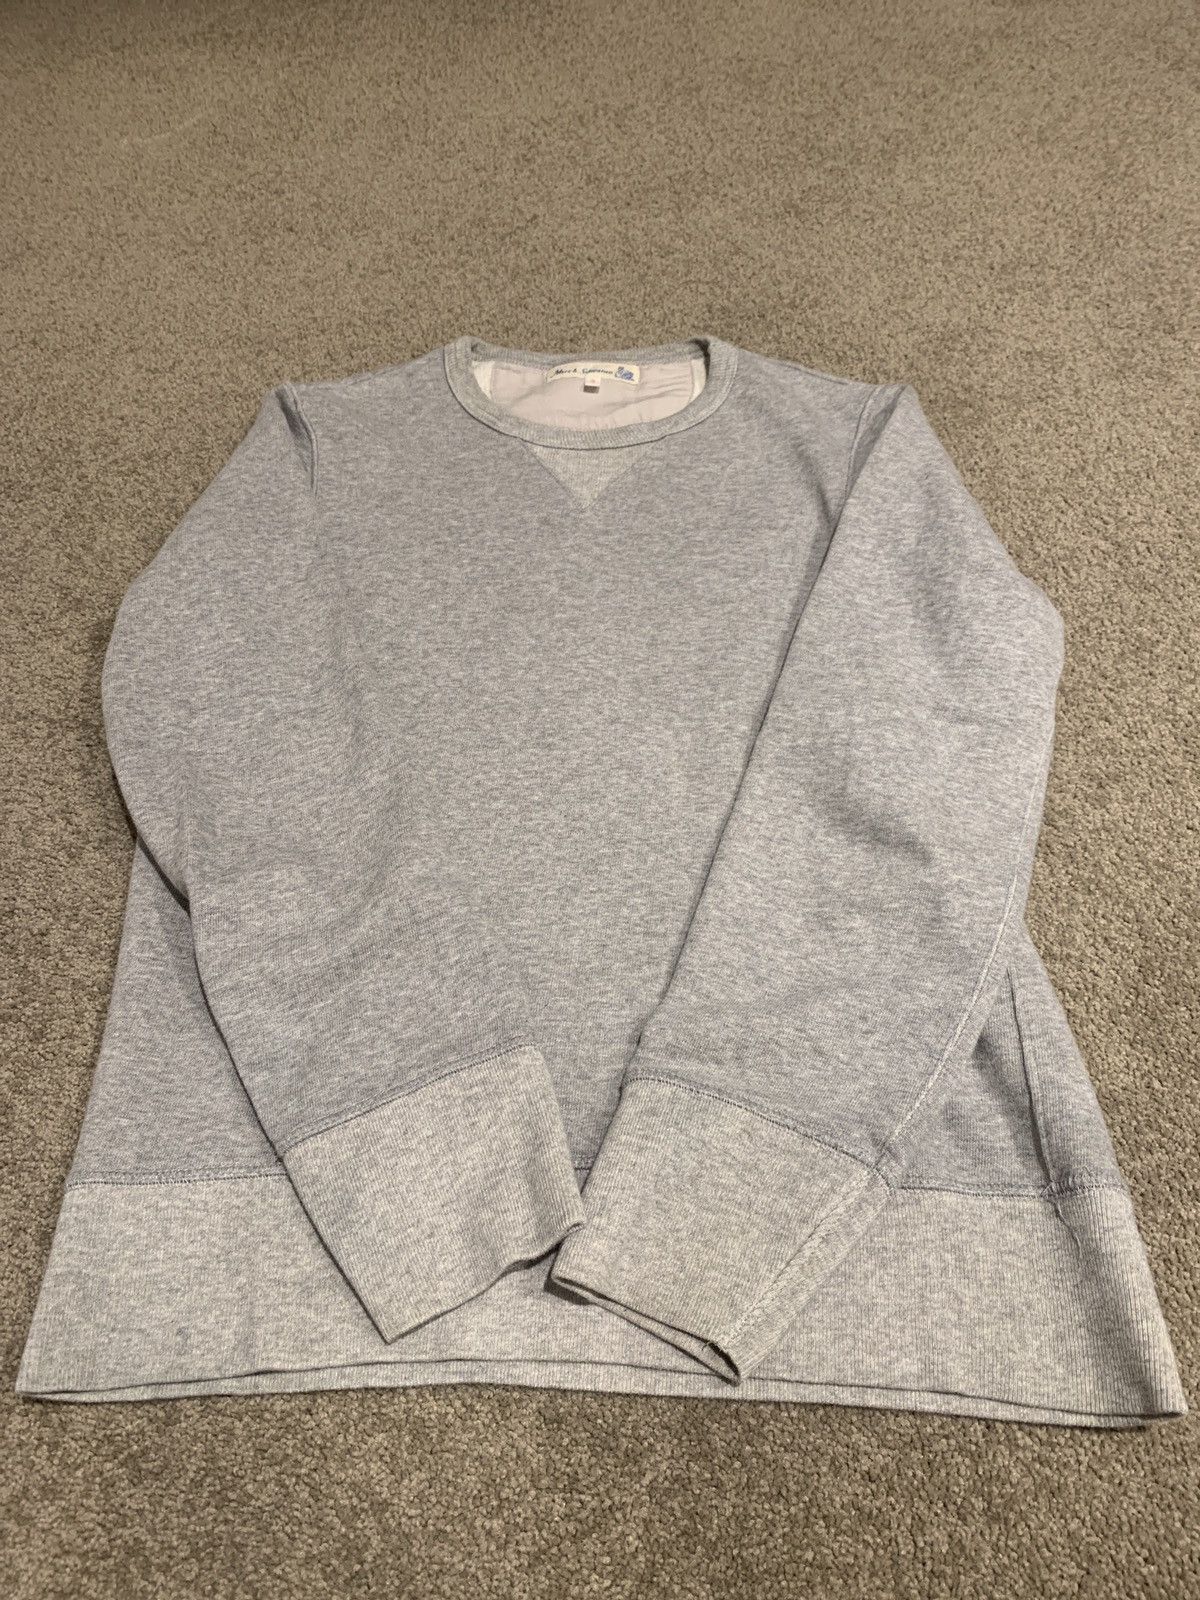 Merz B. Schwanen 3S48 heavy sweatshirt in grey melange | Grailed